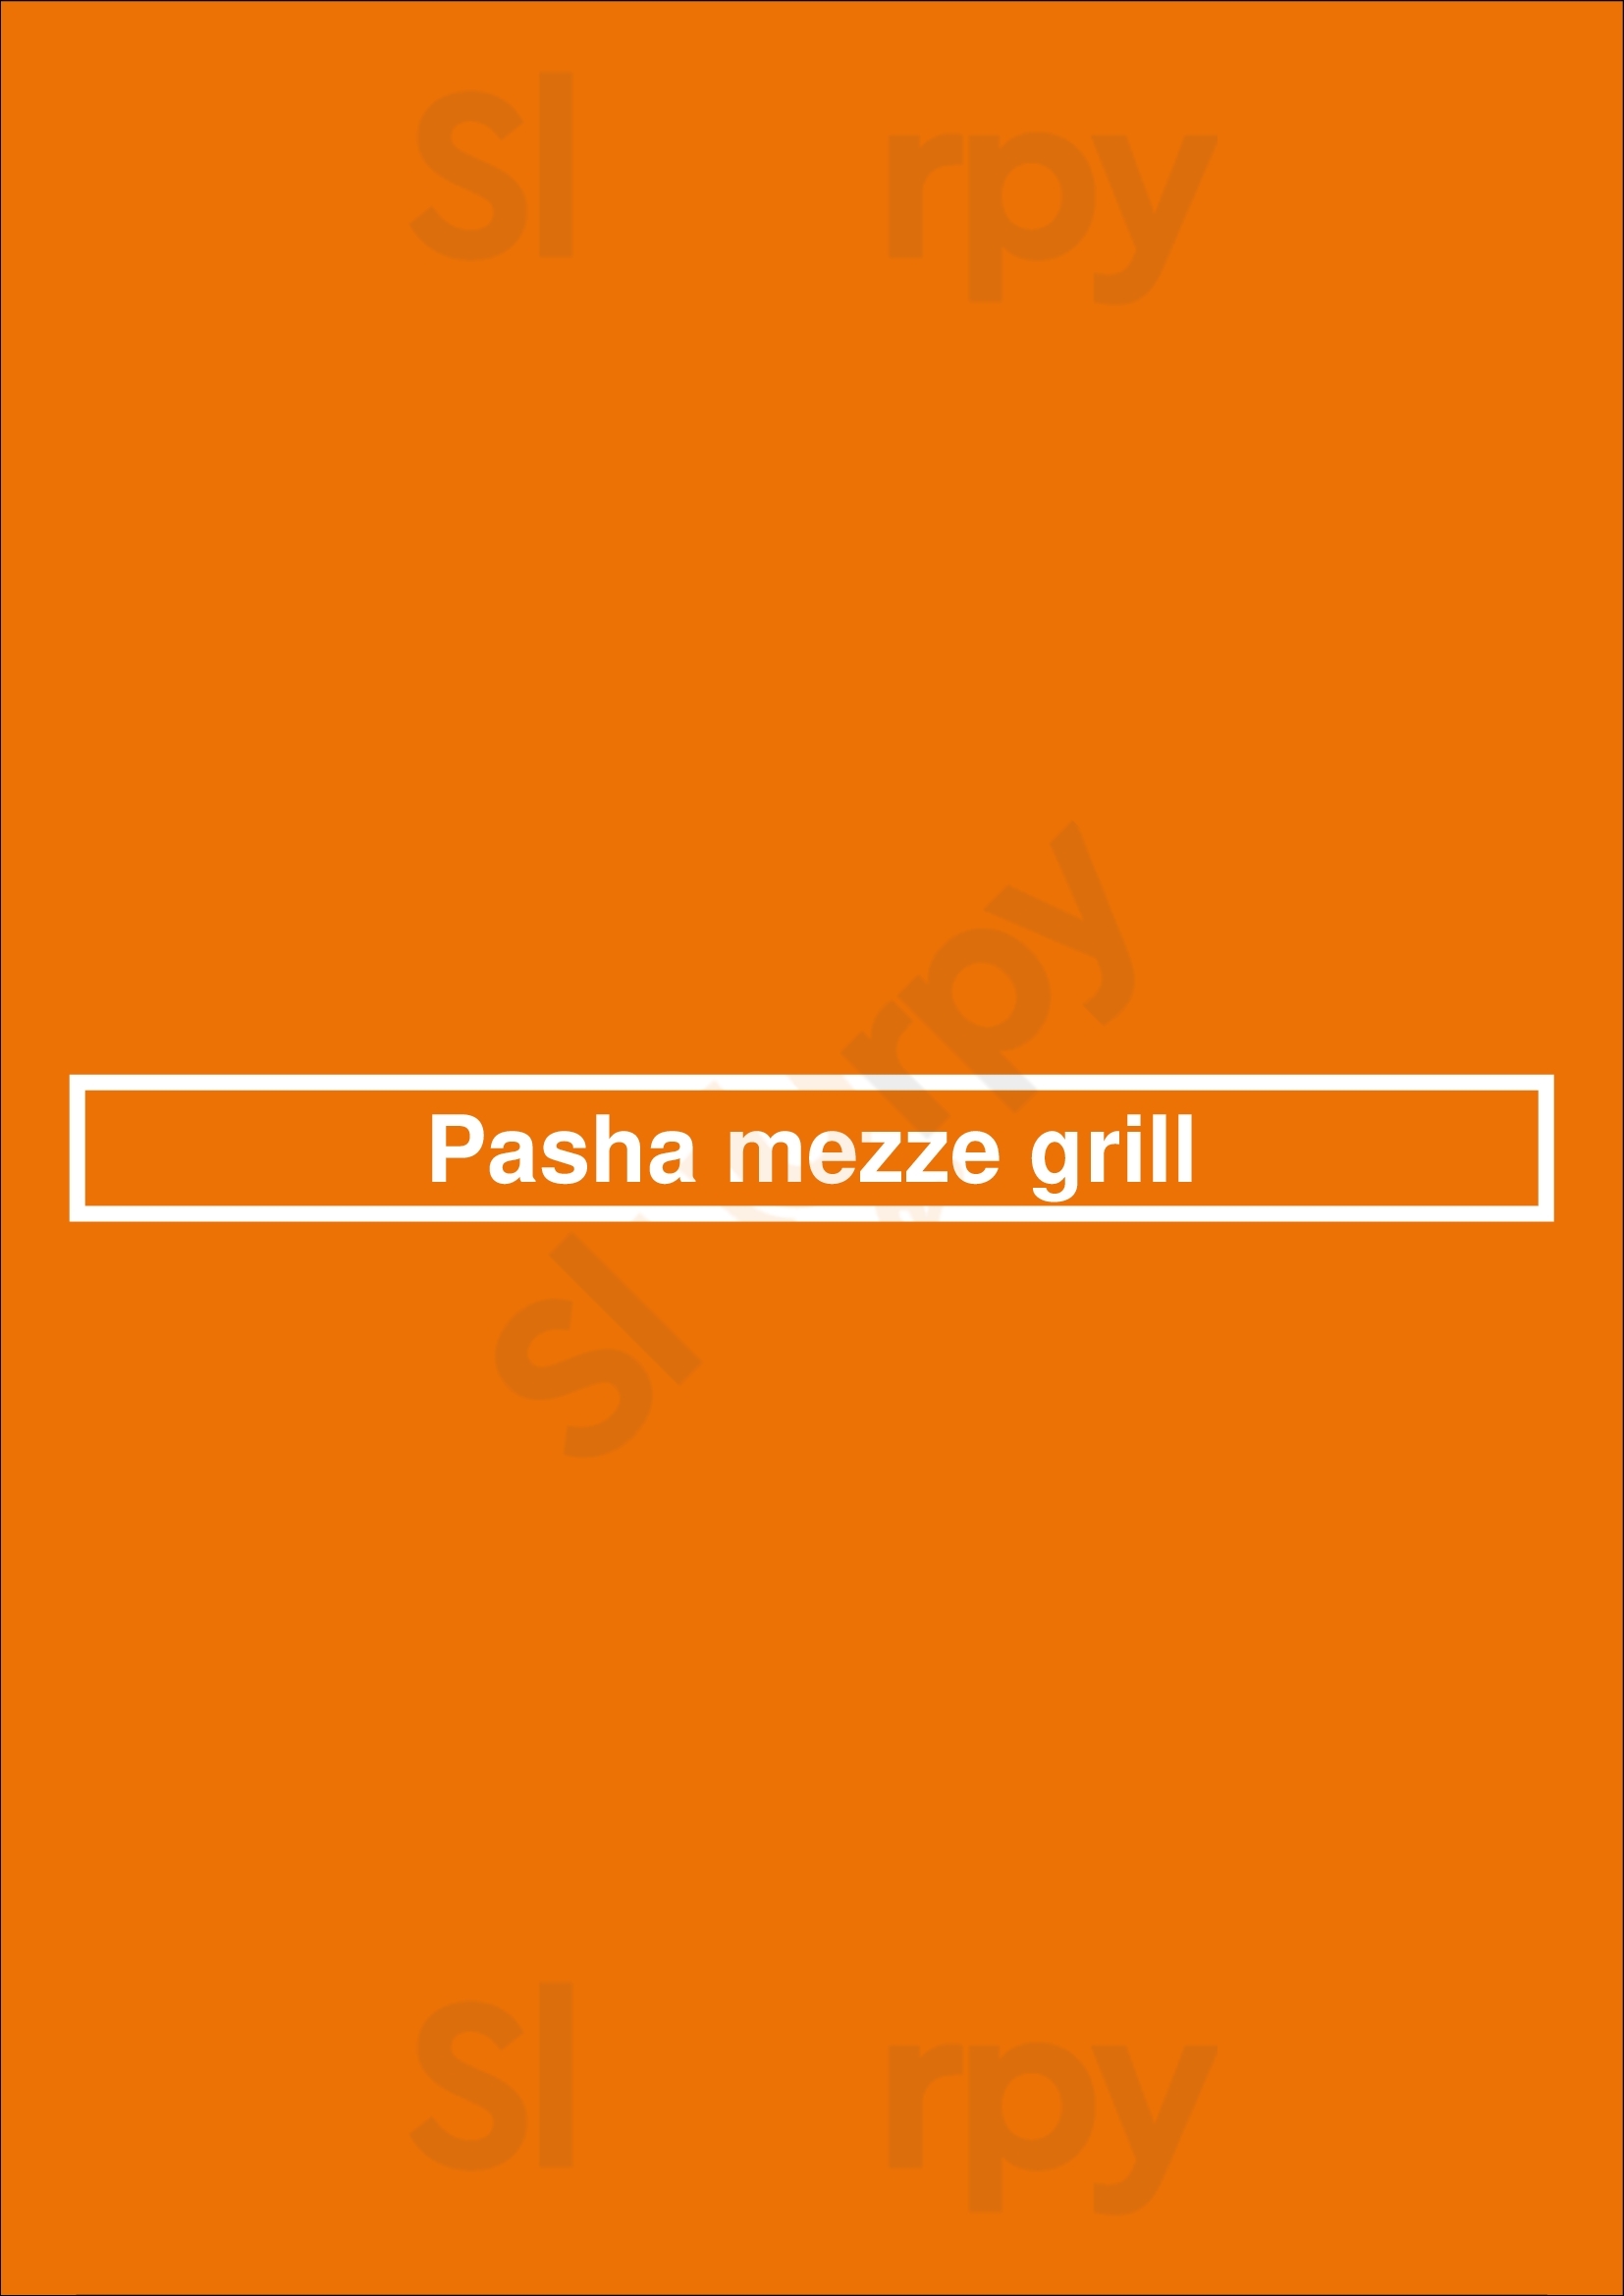 Pasha Mezze Grill Lake Hiawatha Menu - 1